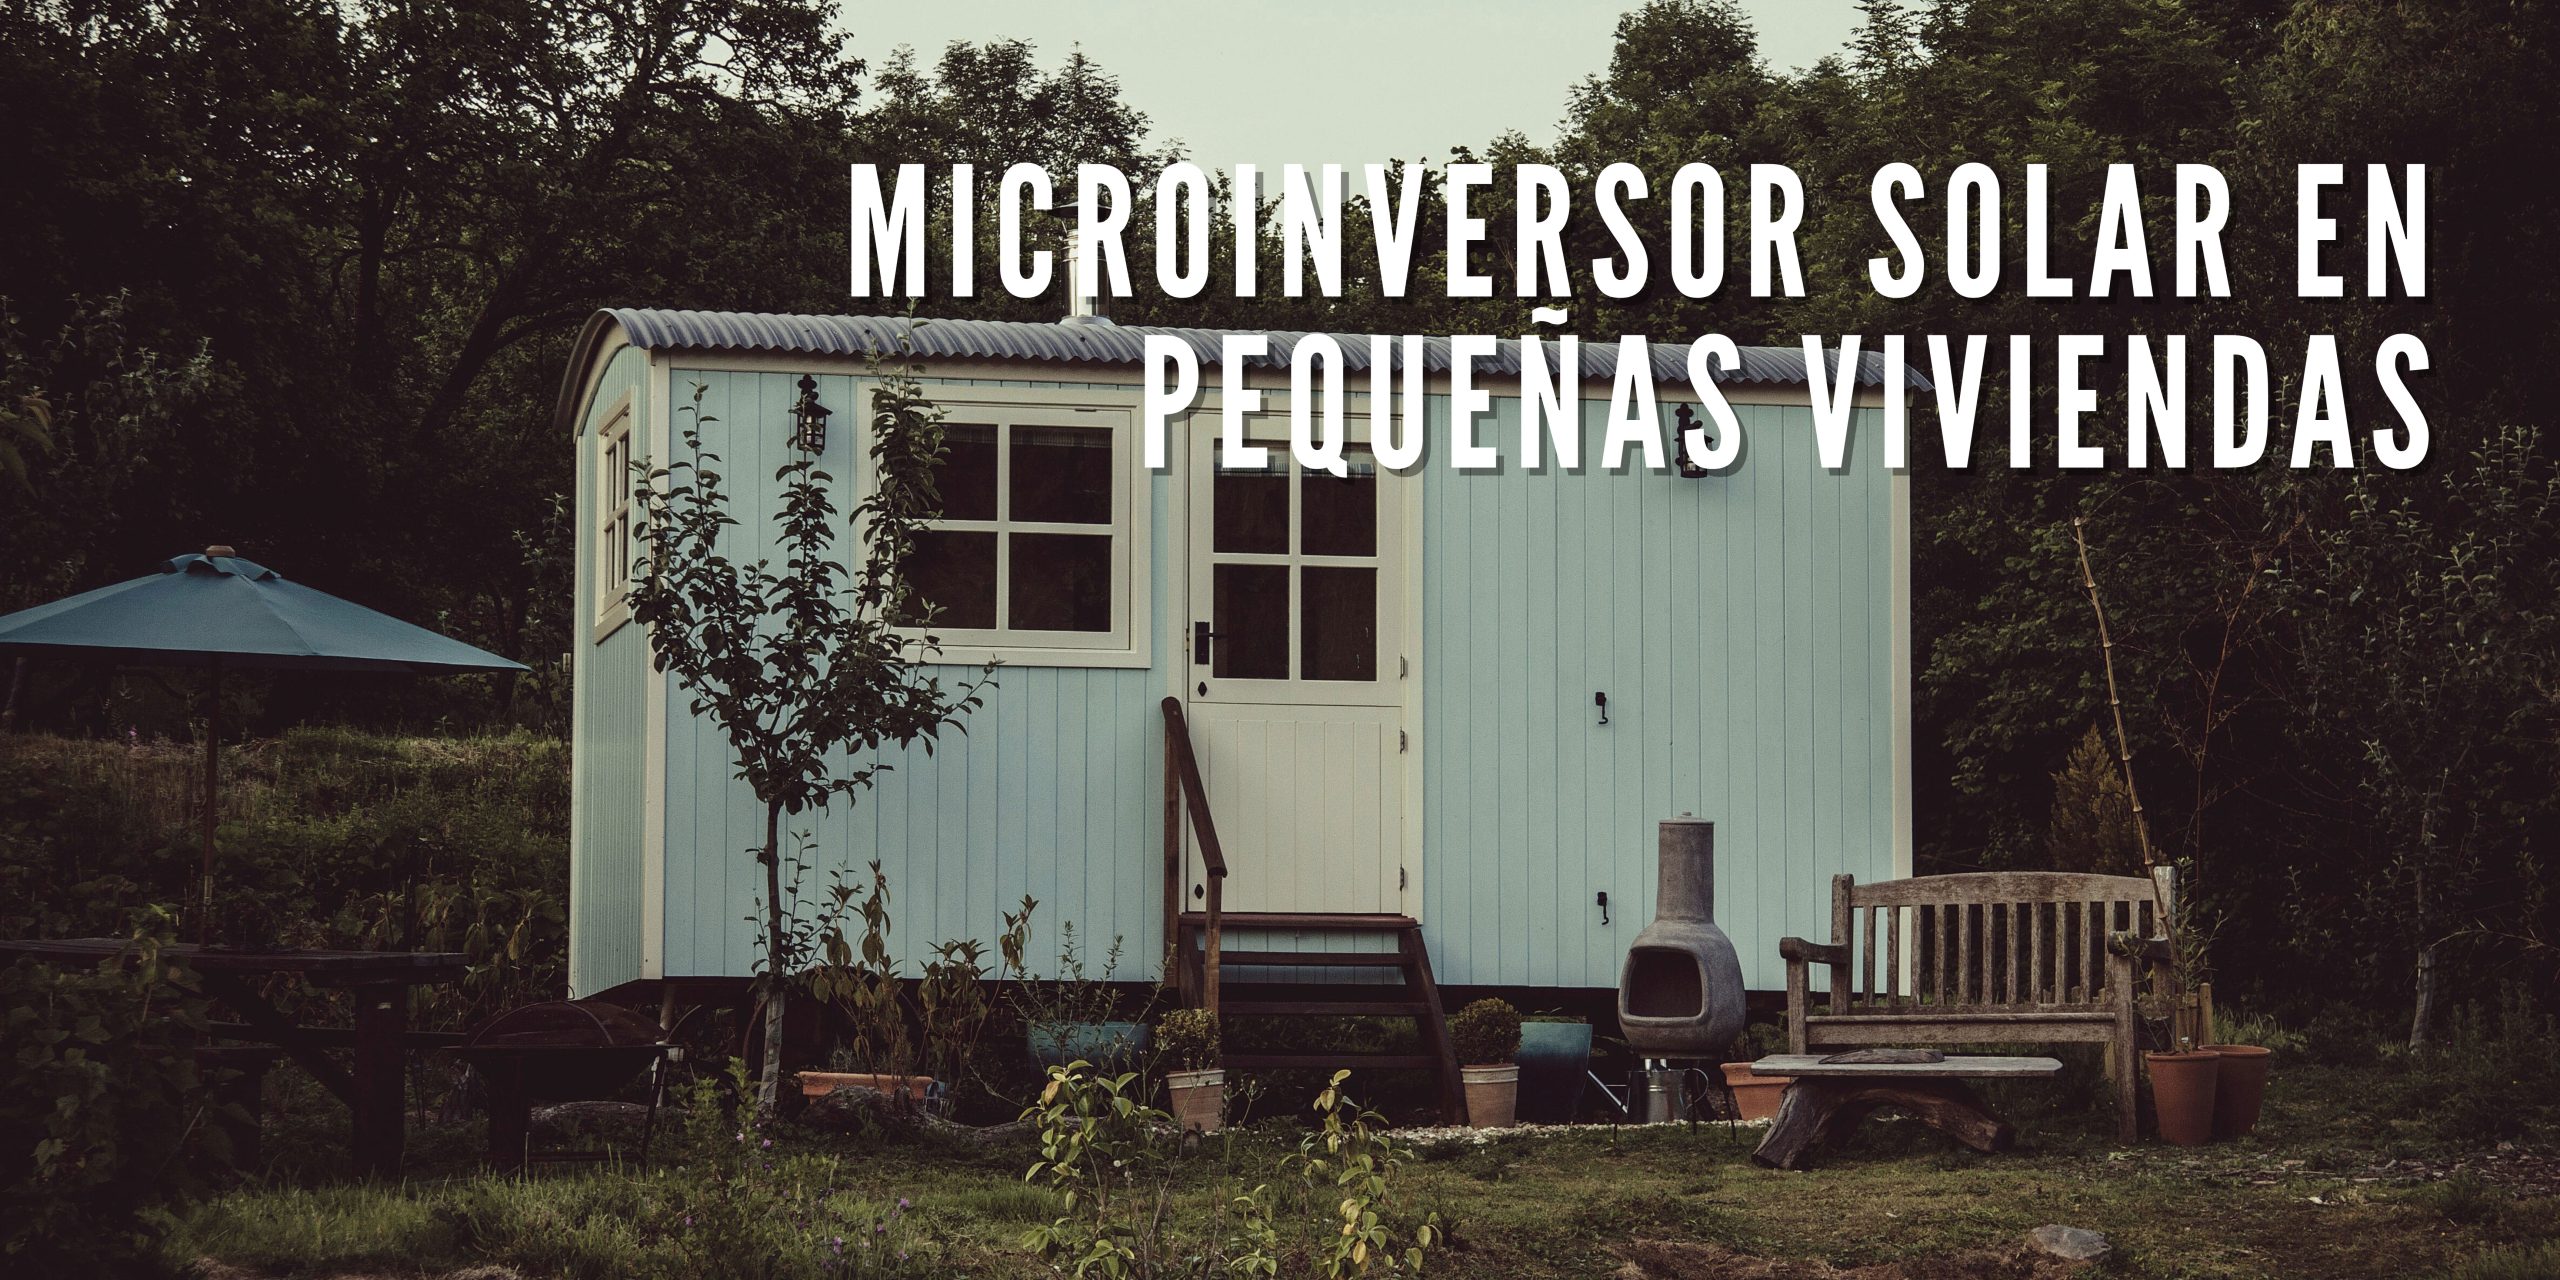 Microinversor solar en pequeñas viviendas